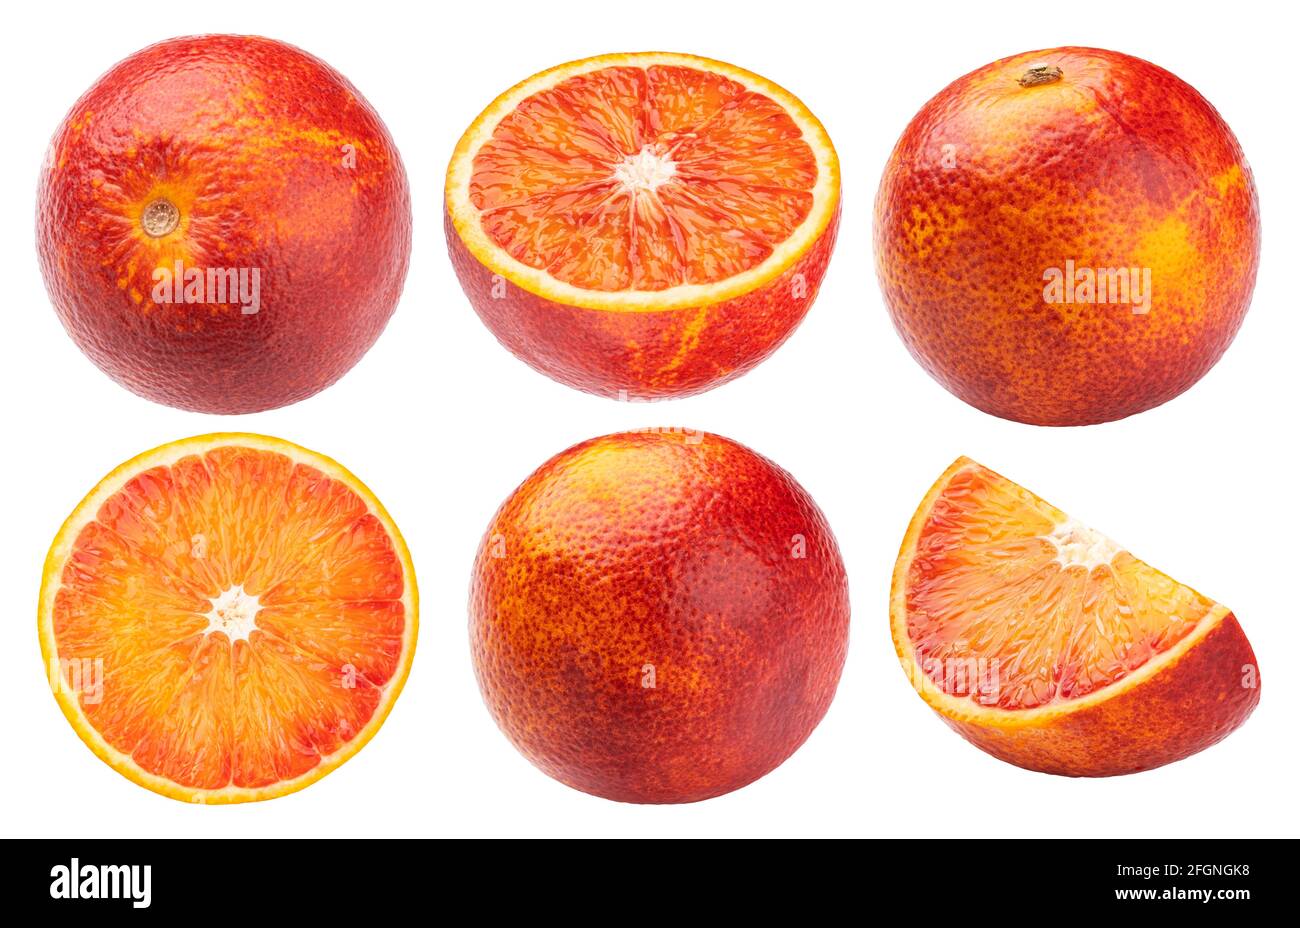 Blood red orange fruits isolated on white background Stock Photo